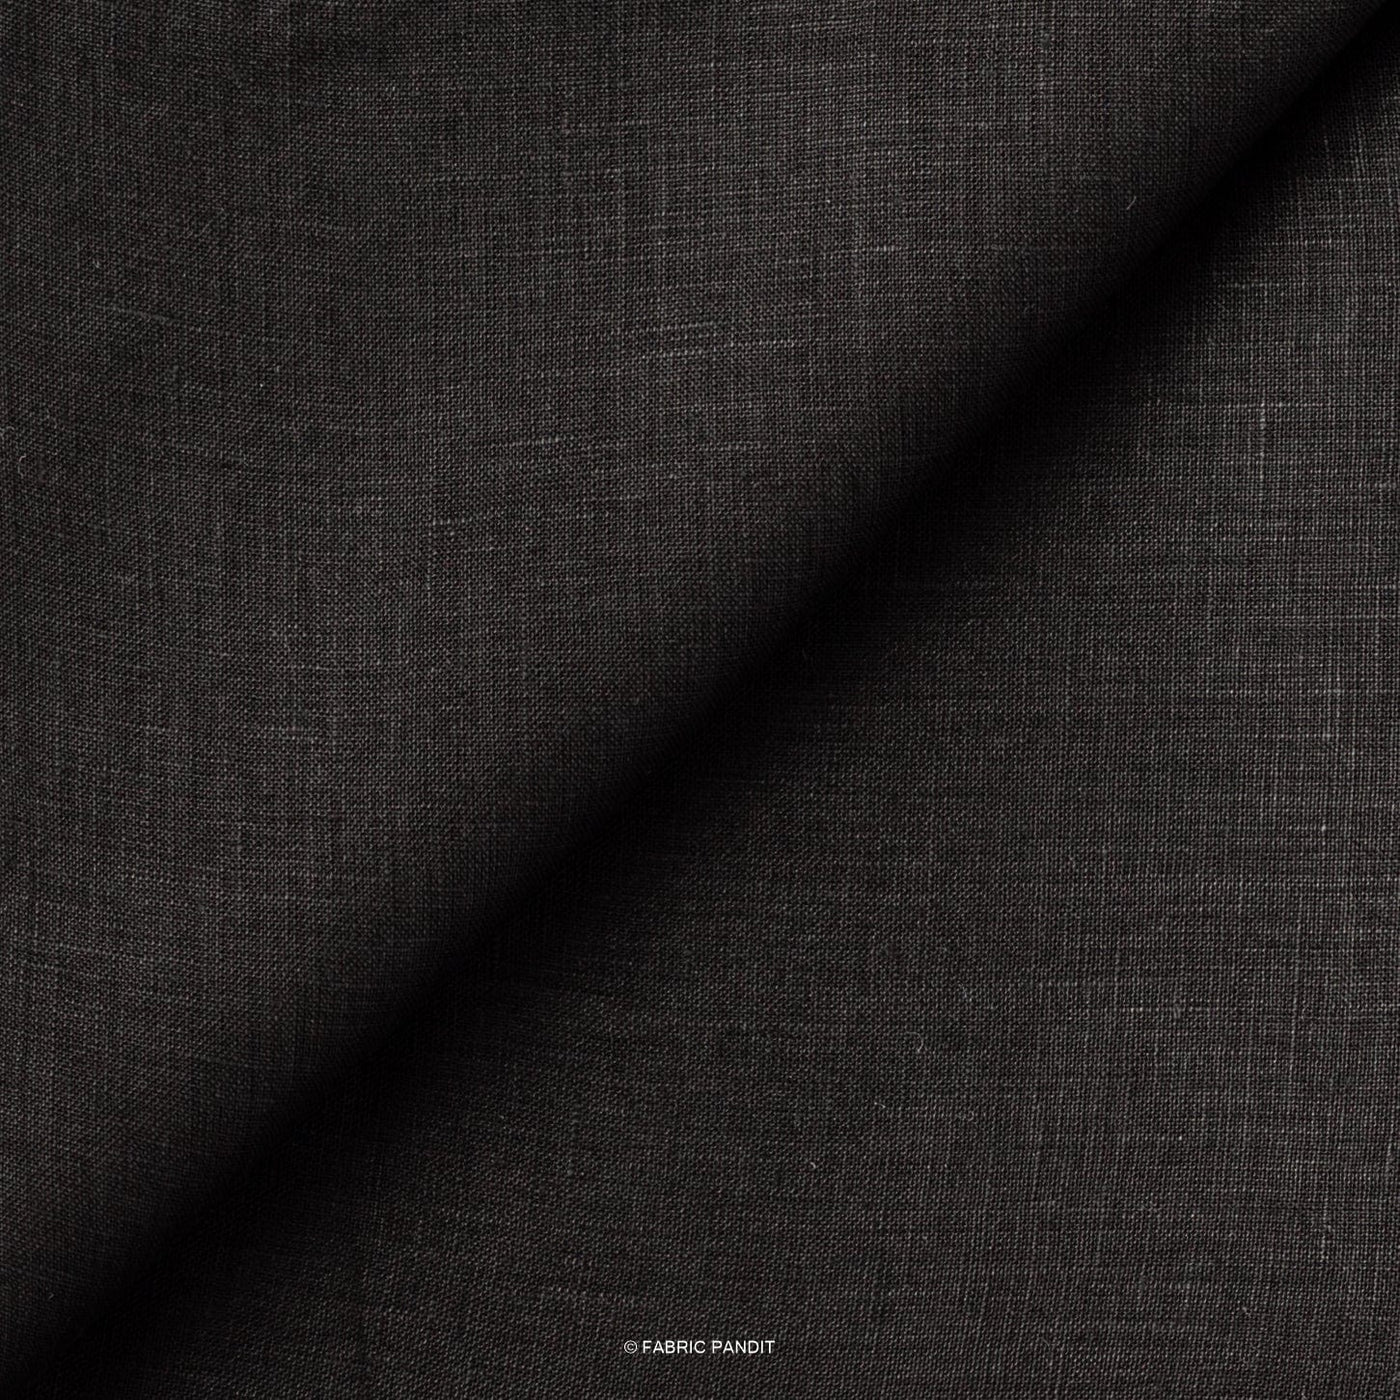 Fabric Pandit Cut Piece (Cut Piece) Carbon Black Plain Premium 60 Lea Pure Linen Fabric (Width 58 inch)